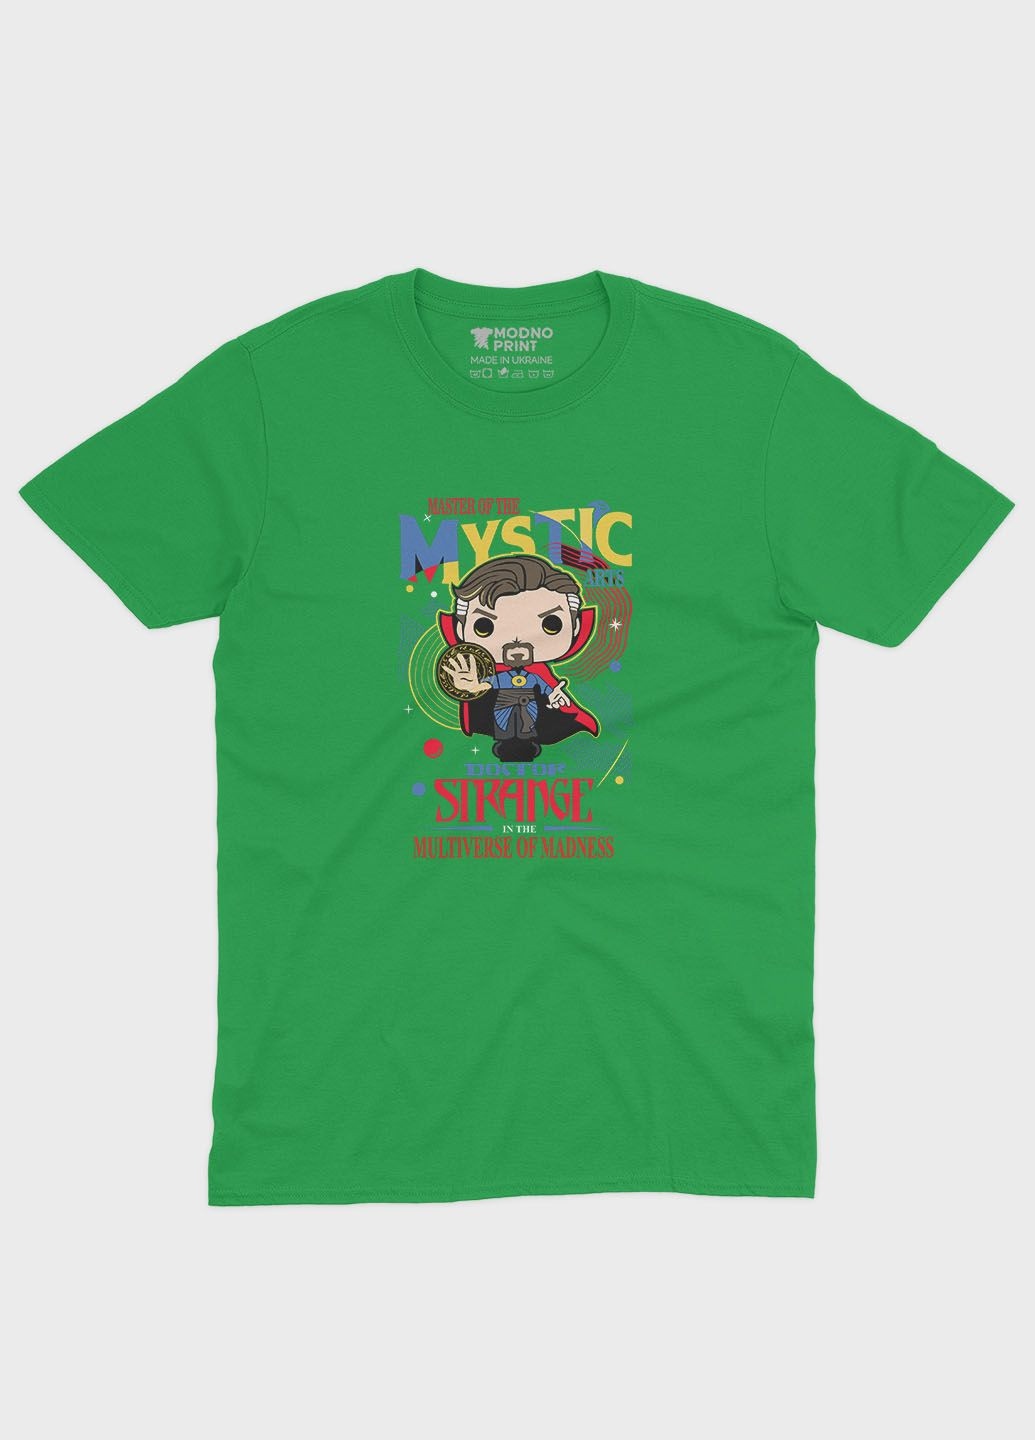 Зелена демісезонна футболка для дівчинки з принтом супергероя - доктор стрендж (ts001-1-keg-006-020-006-g) Modno